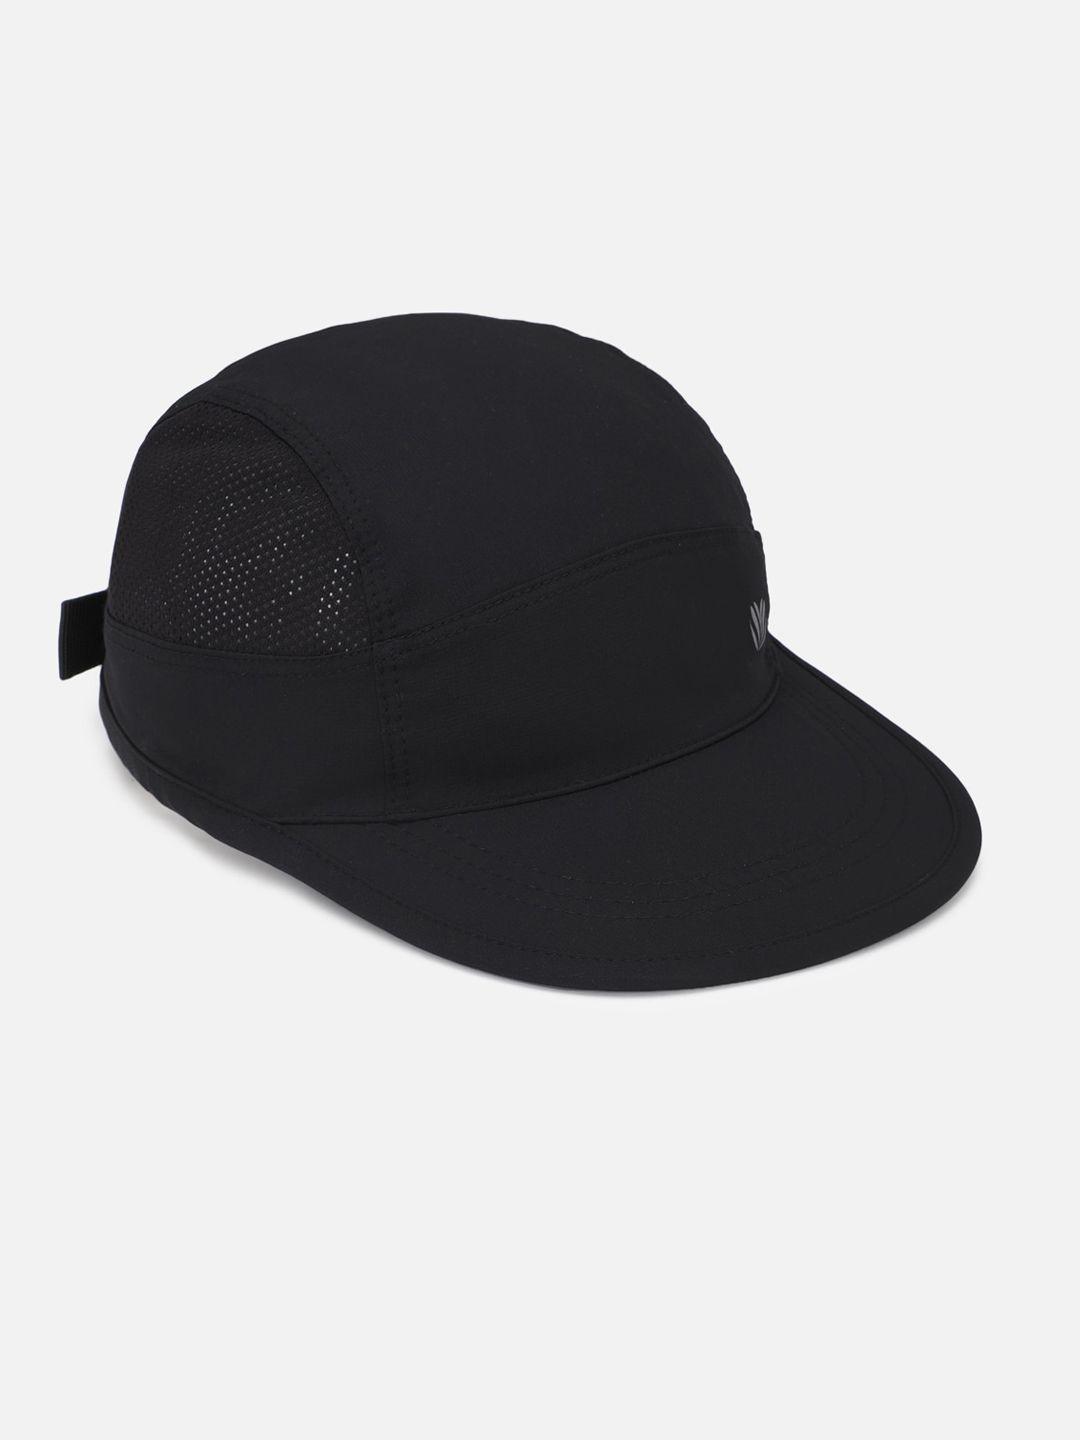 forever 21 men black baseball cap